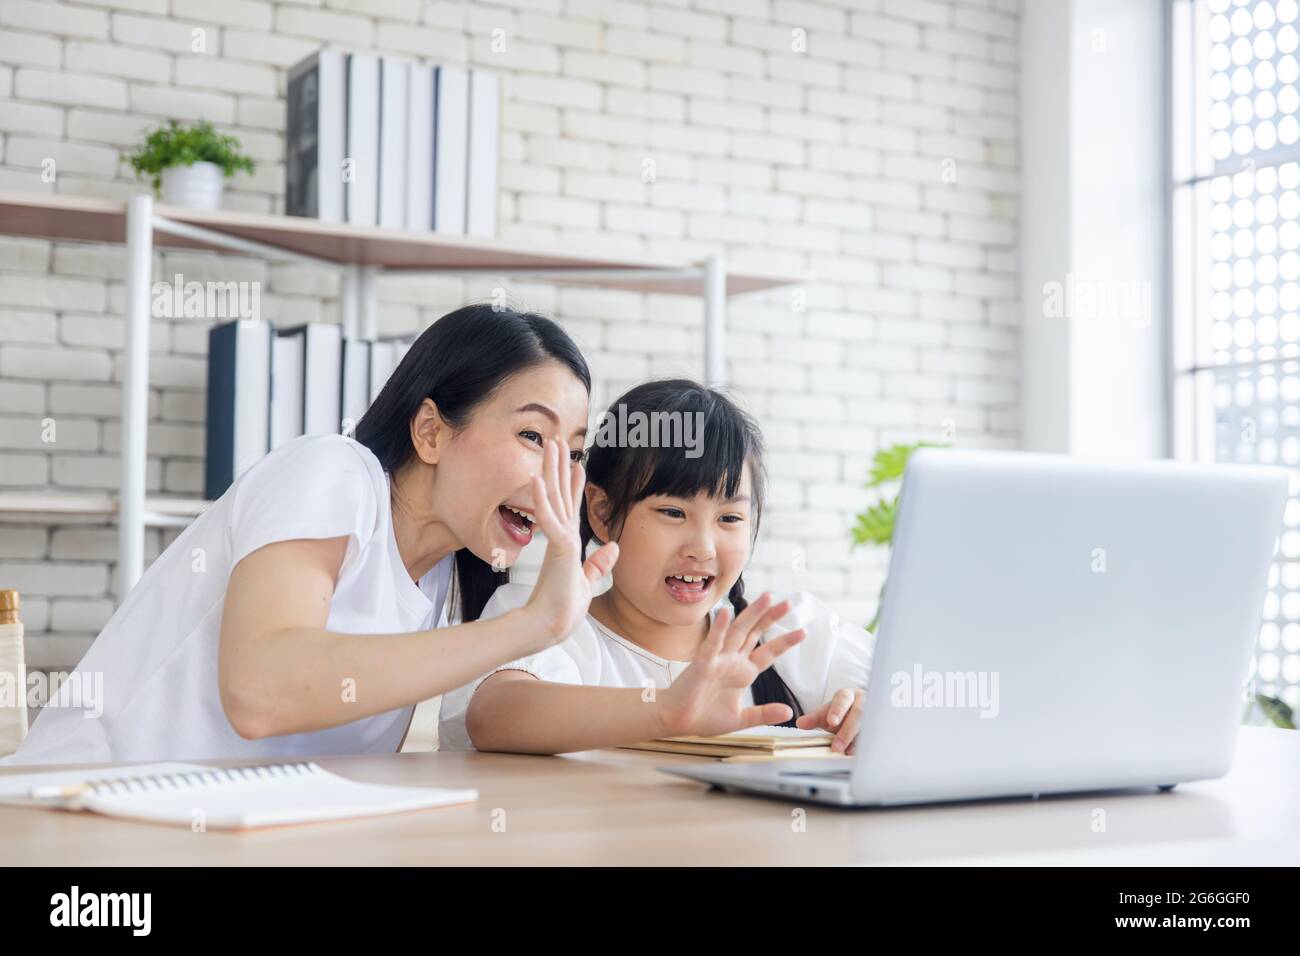 La mère asiatique enseigne les devoirs à la fille sur un ordinateur portable à la maison, famille heureuse et éducation concept d'école à domicile, la mère et la fille vague main pour accueillir le professeur Banque D'Images